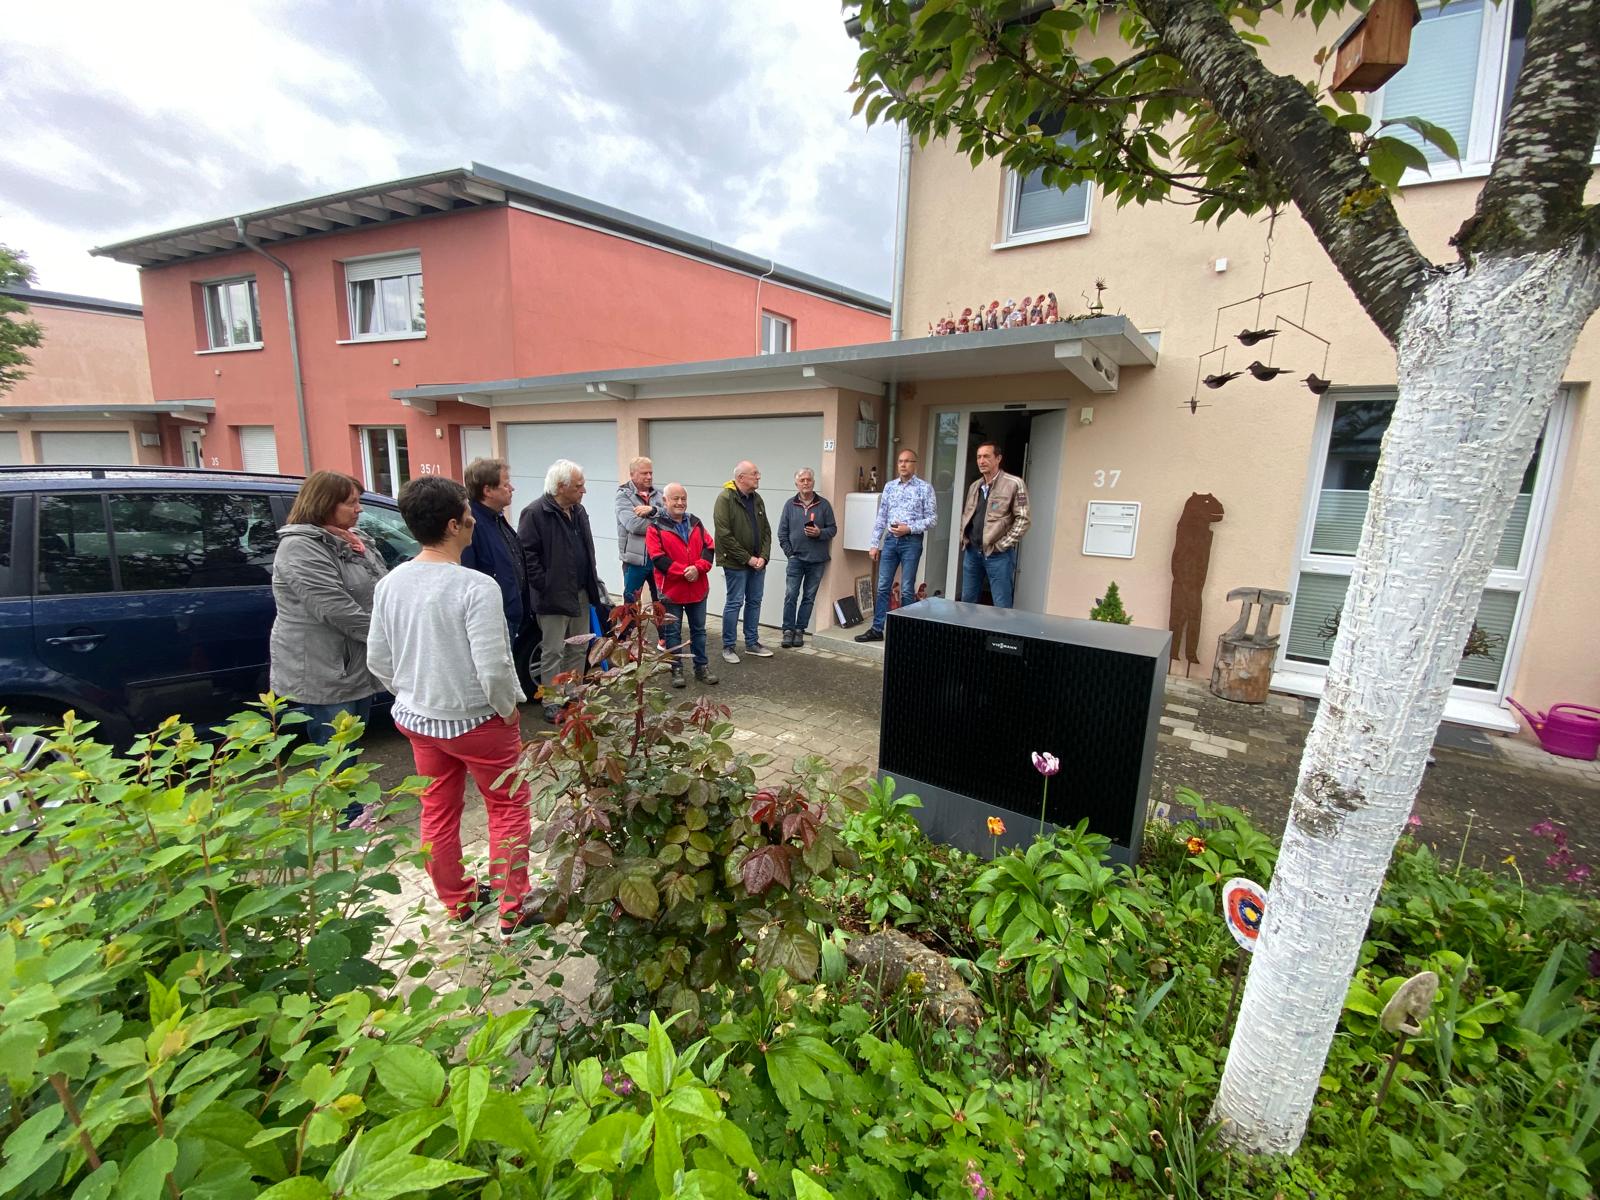 Eine Menschengruppe steht vor einem Haus und diskutiert. Im Vordergrund ist die im Vorgarten platzierte Außeneinheit einer Wärmepumpe zu sehen.